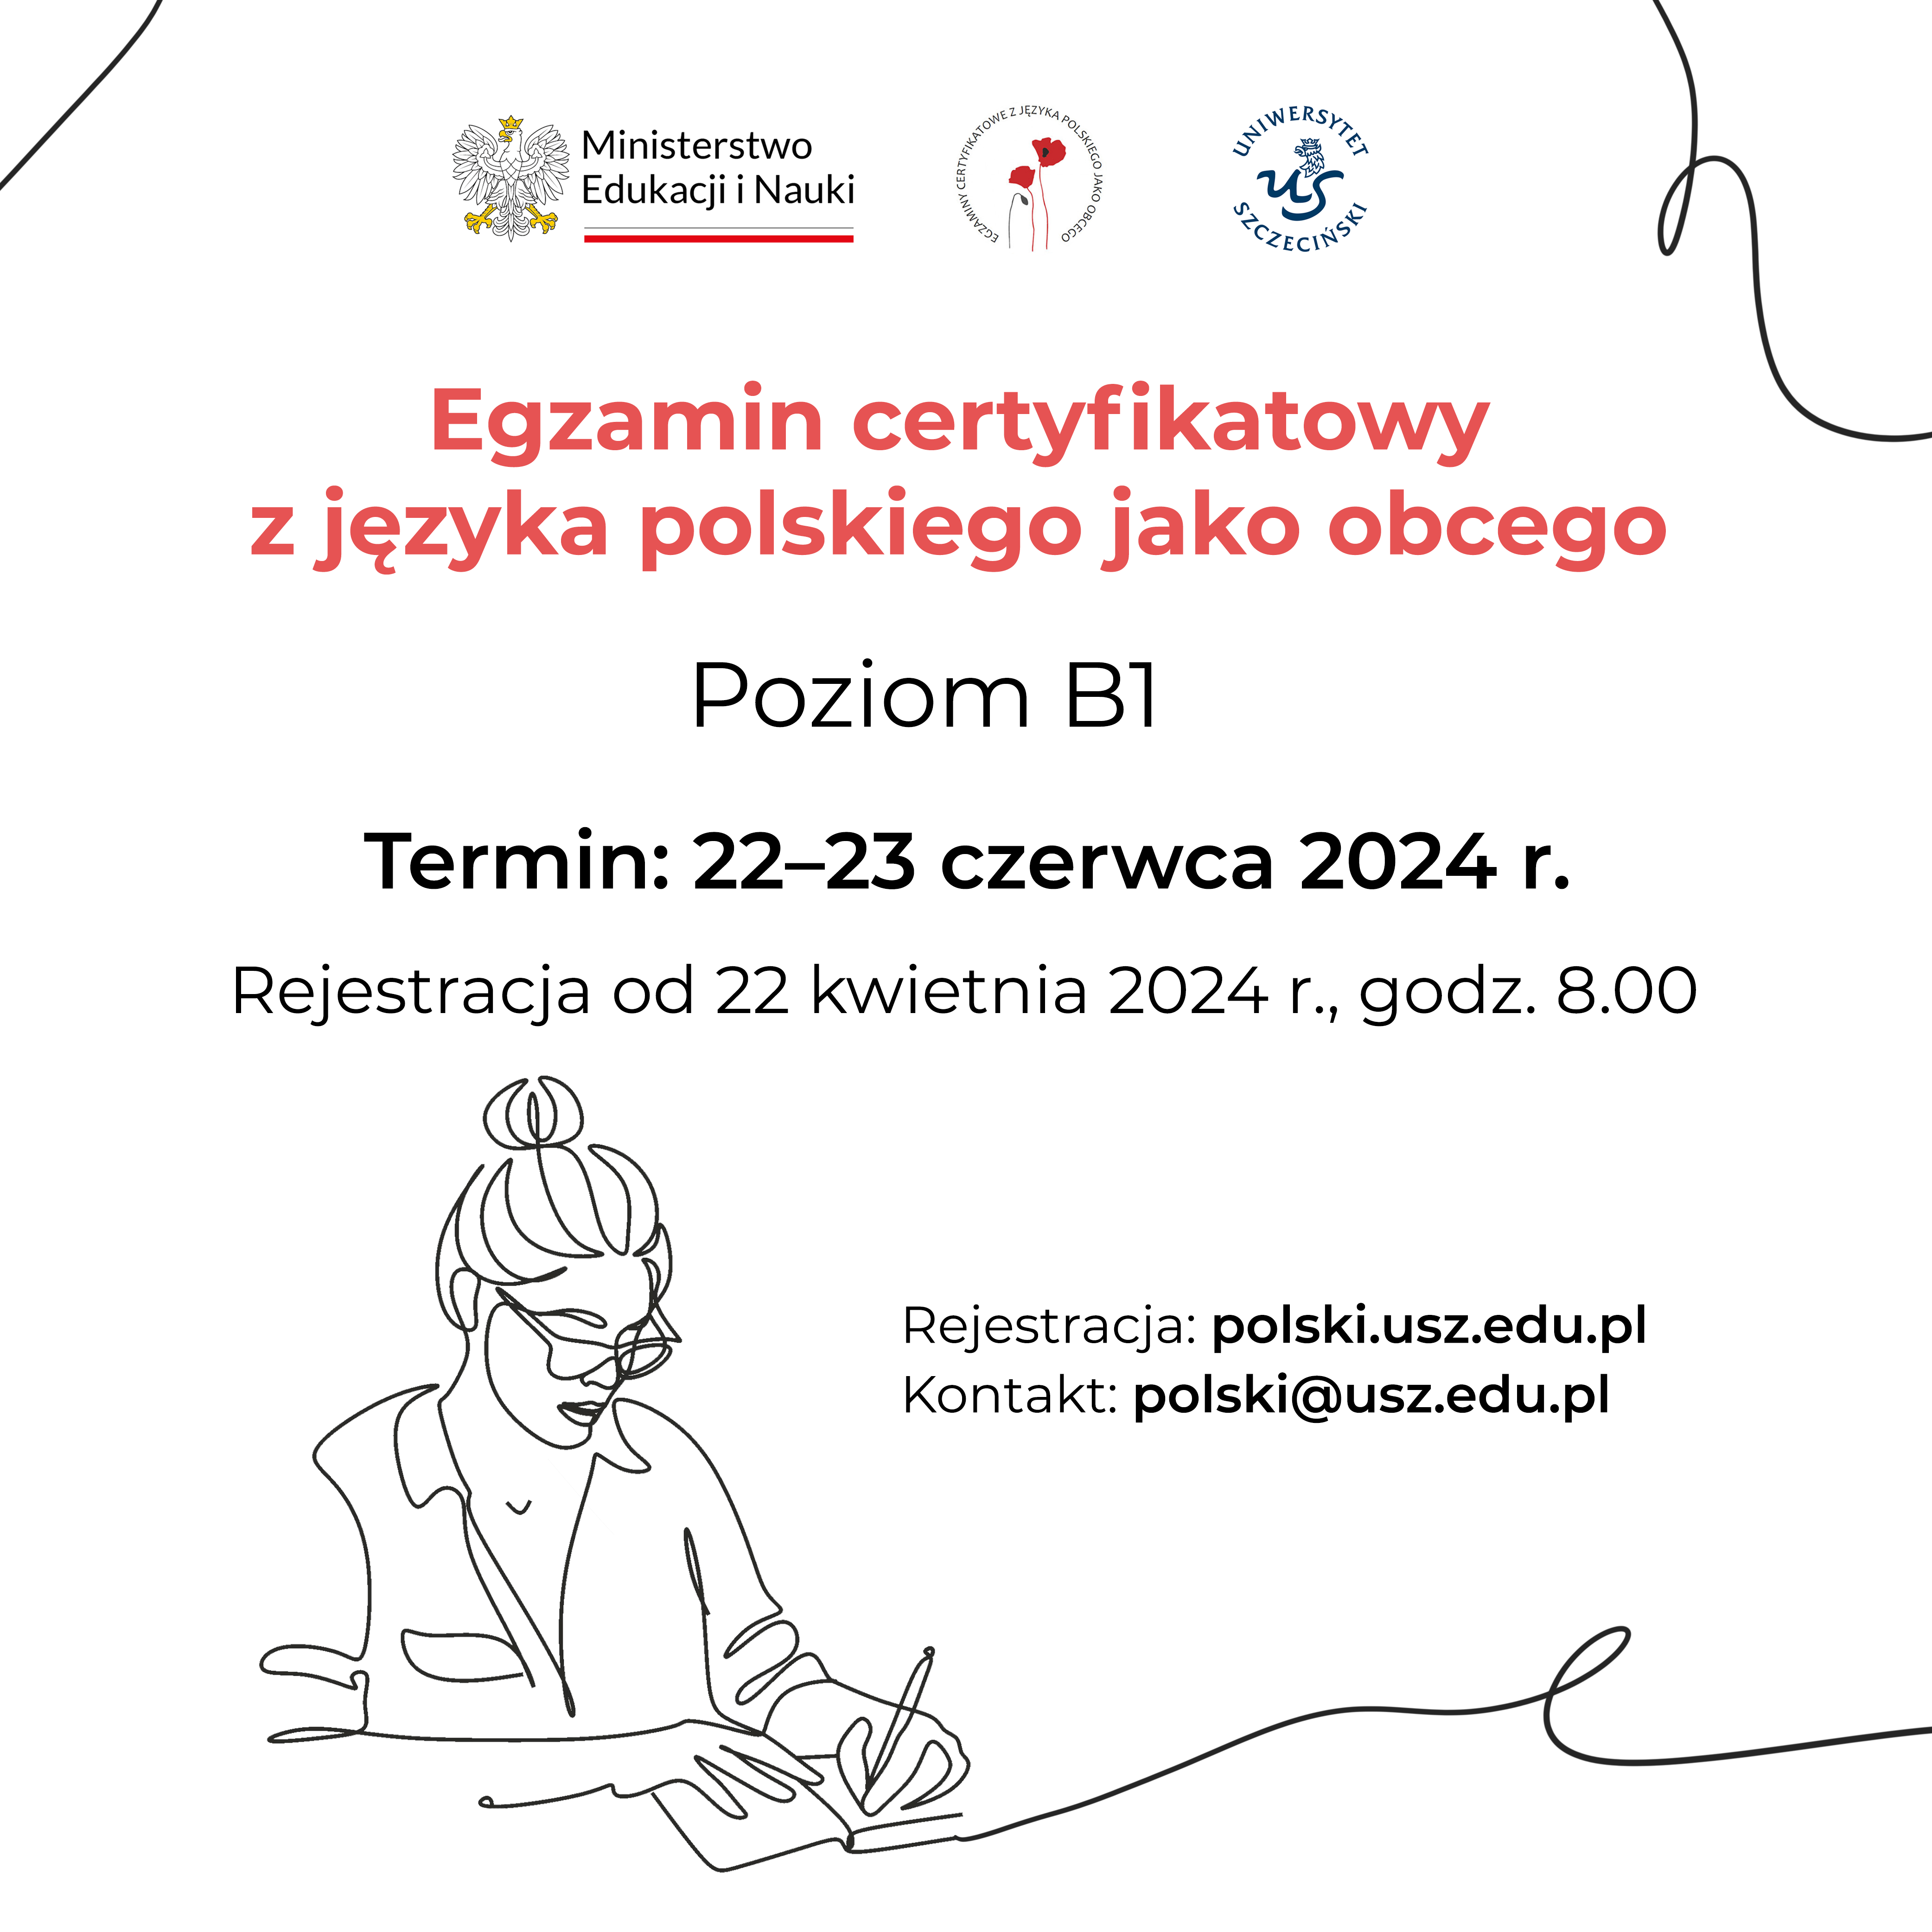 Egzamin certyfikatowy z języka polskiego jako obcego na poziomie B1 na Uniwersytecie Szczecińskim – rejestracja na sesję 22-23 czerwca 2024 r.